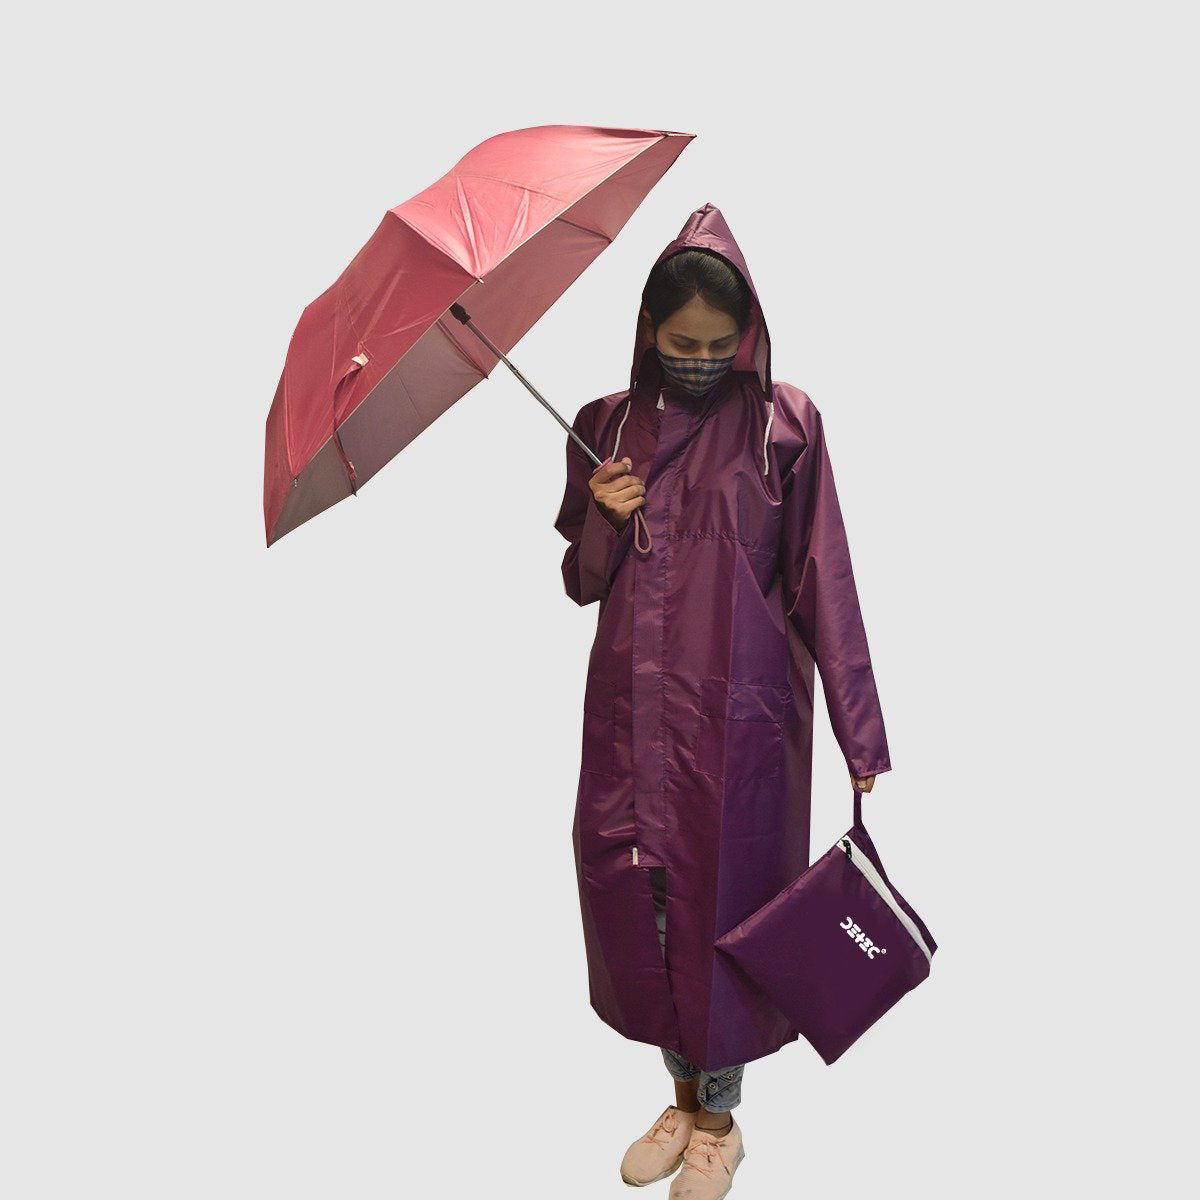 Detec™ full size Rain suit/Umbrella in Mulberry Color 